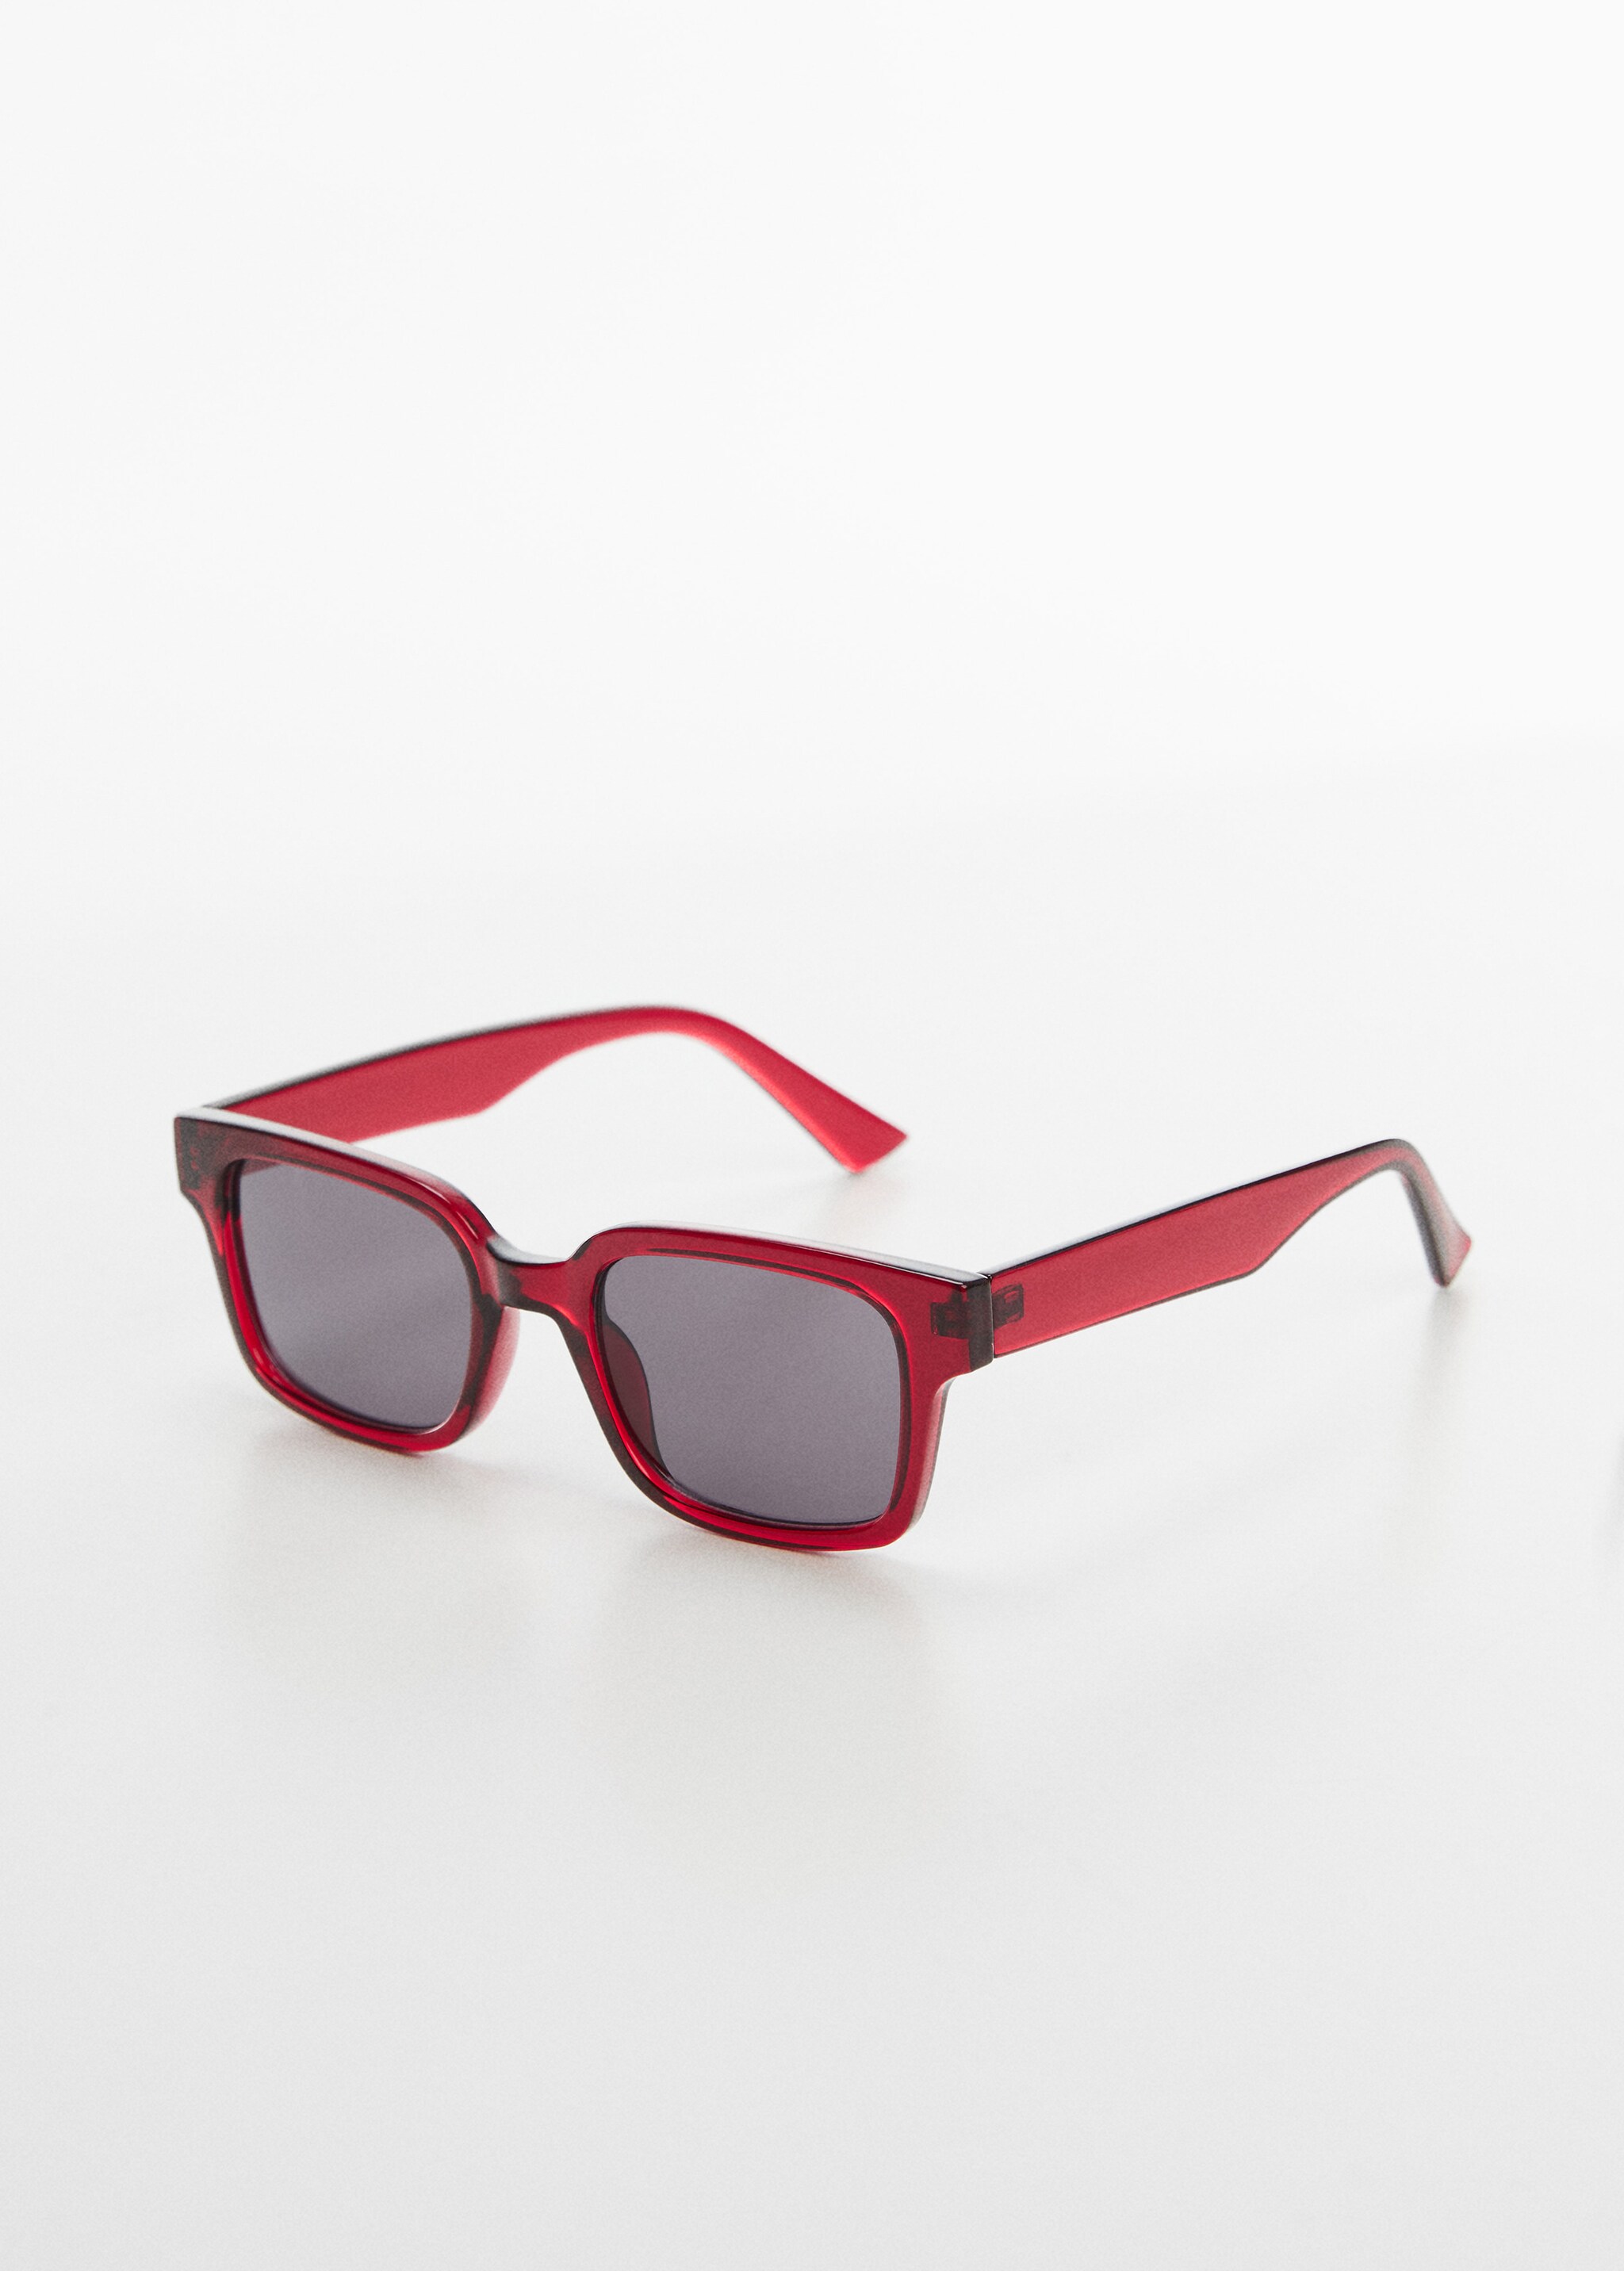 Square sunglasses - Medium plane